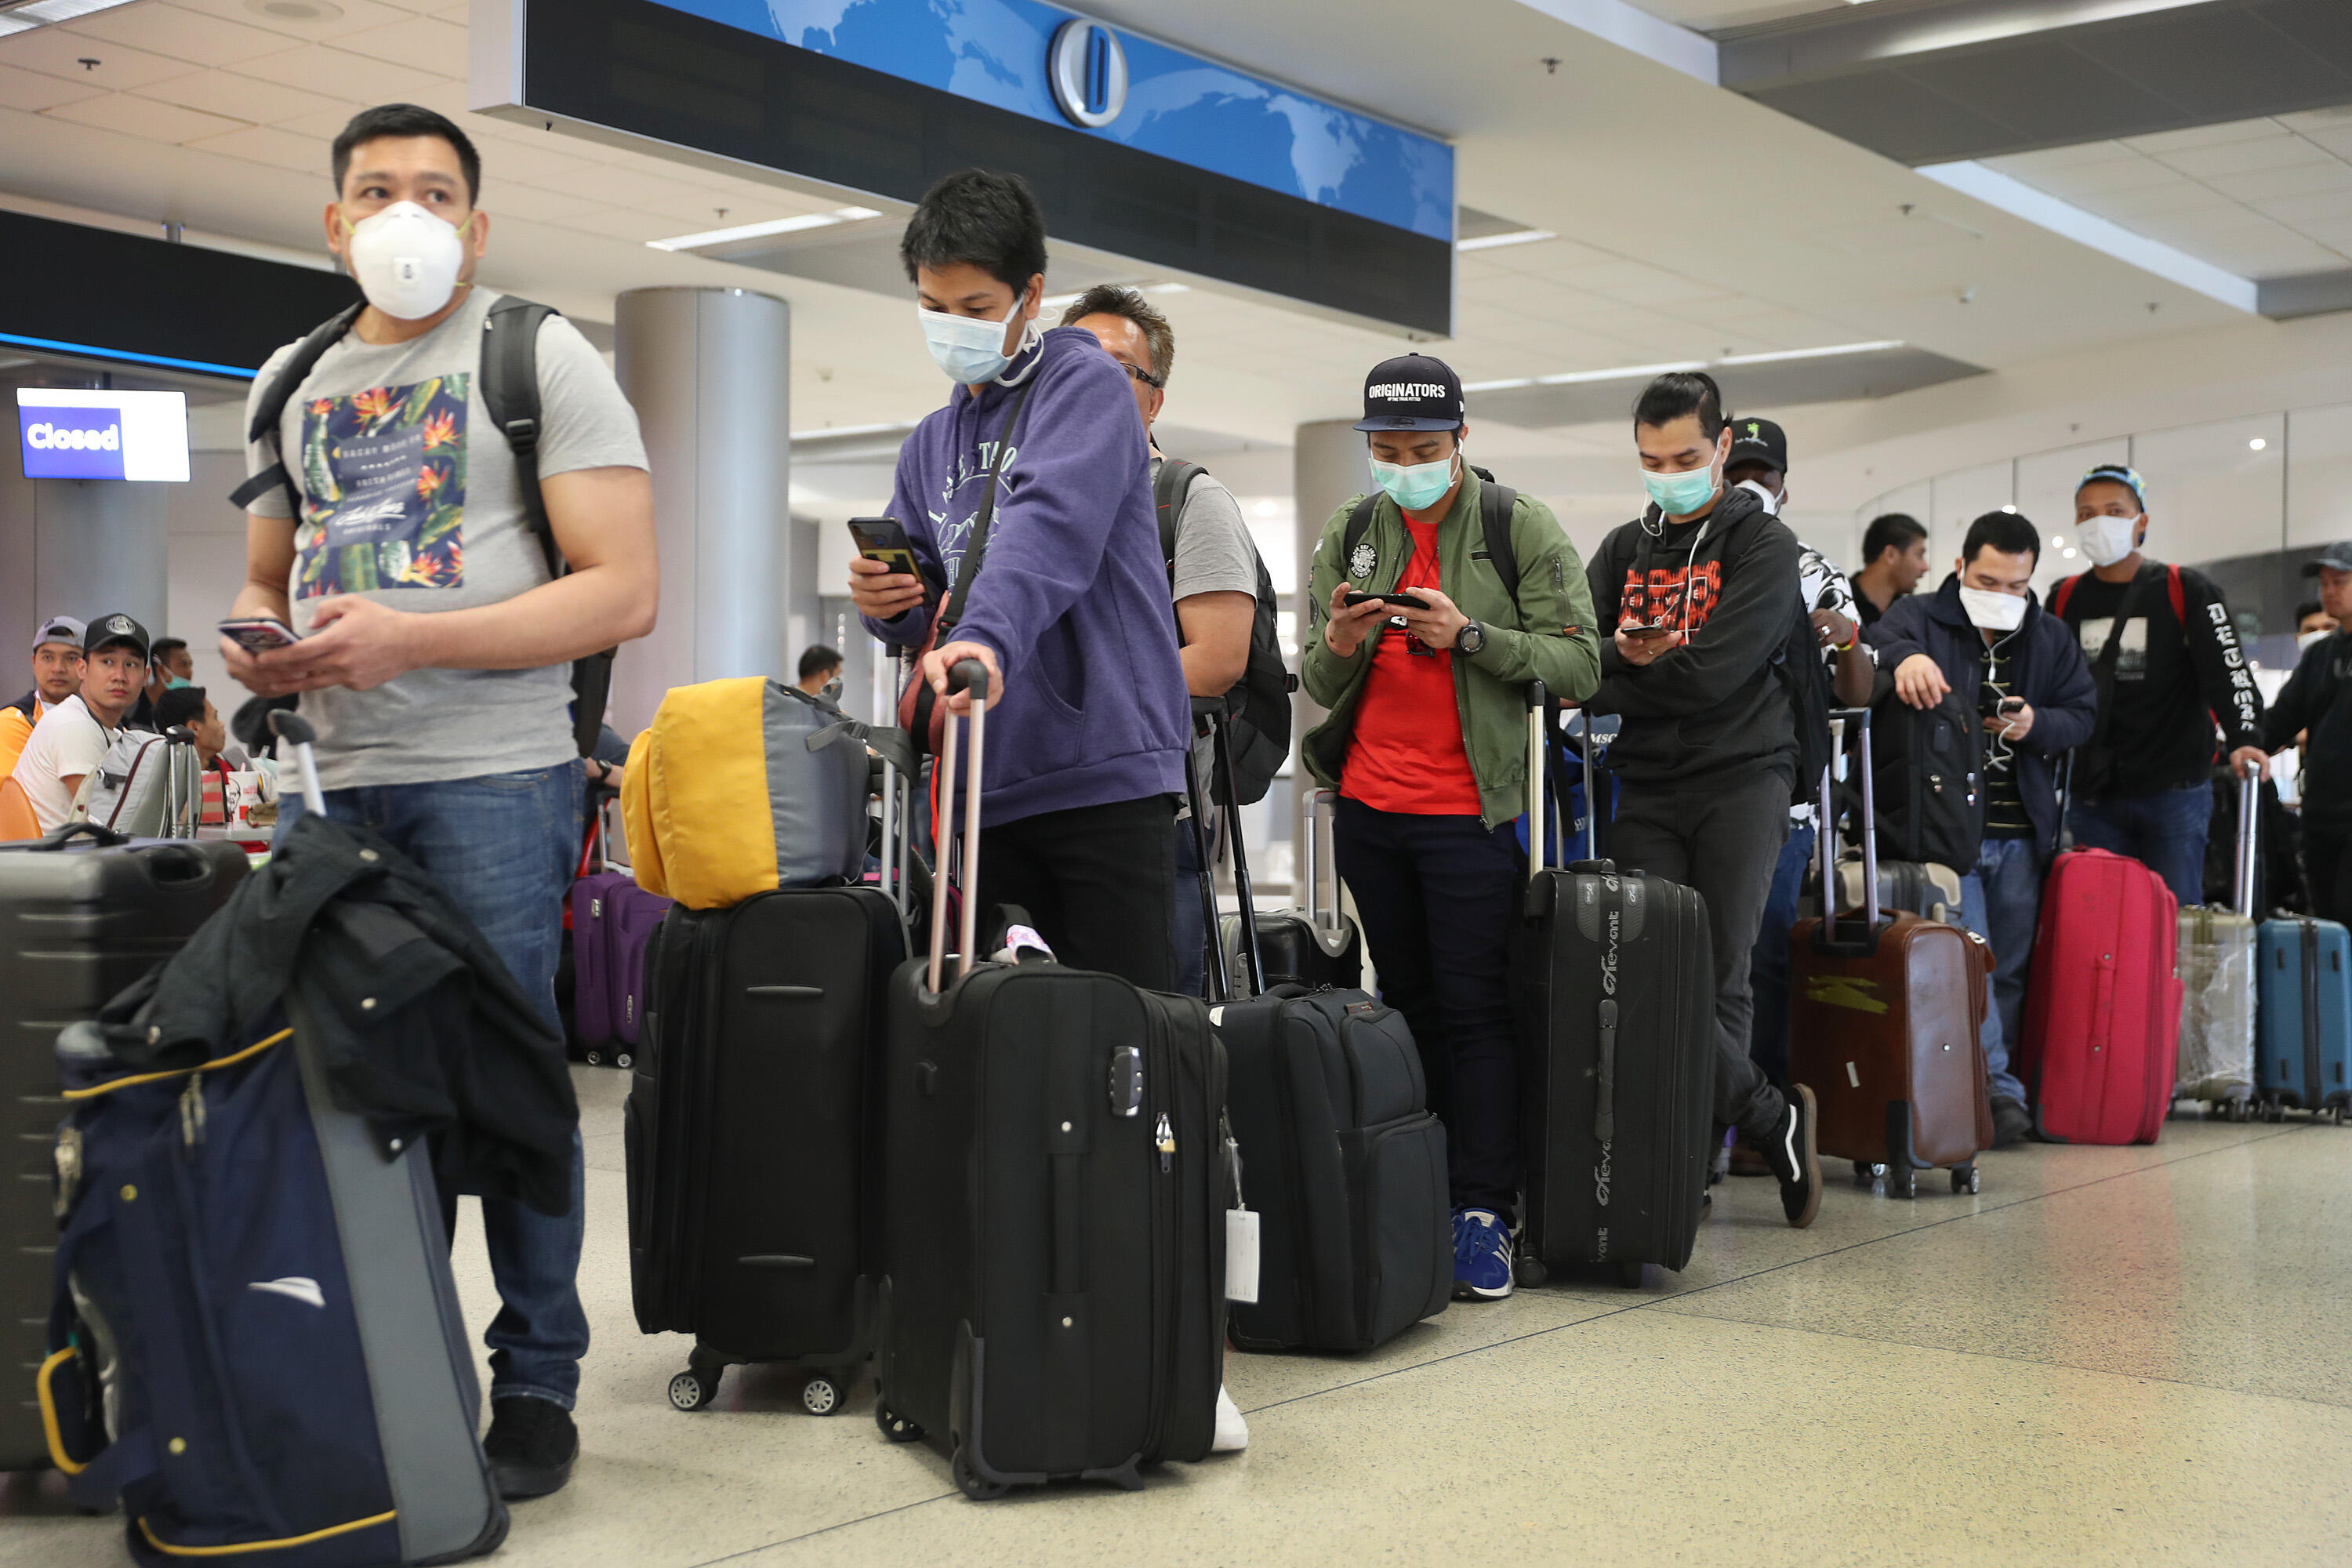 Выезд гражданина рф за границу. Мигранты в аэропорту. Иностранцы в аэропорту. Туристы в аэропорту. Мигранты с чемоданами.